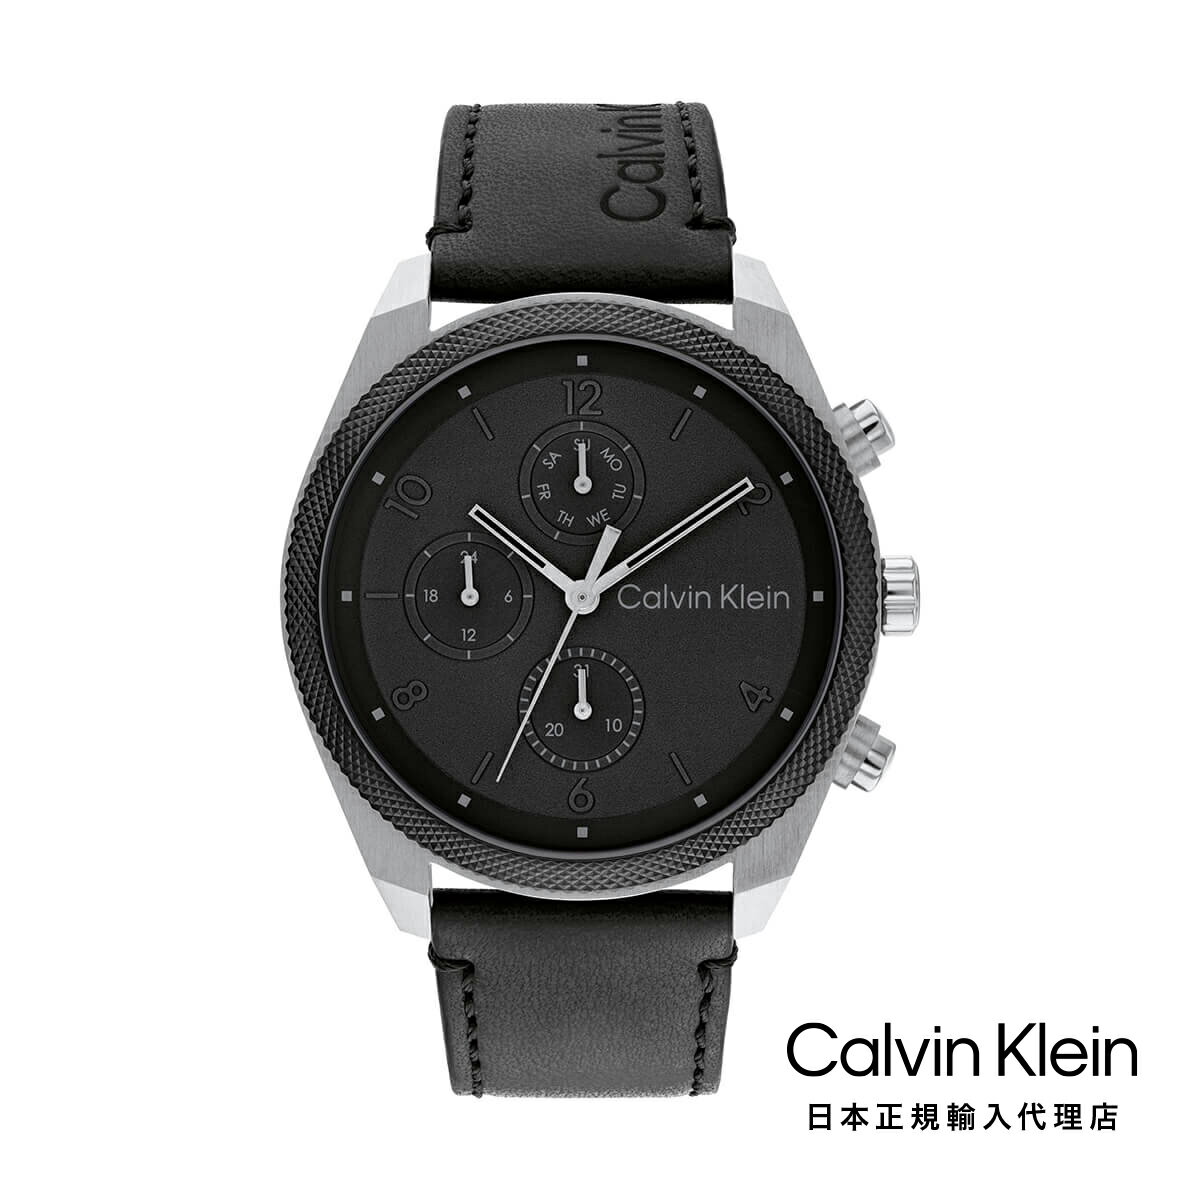 Calvin Klein カルバンクライン 日本総輸入代理 腕時計 メンズ ブランド インパクト 44MM ブラック ダイヤル SS/ブラック ケース ブラック レザー ストラップ